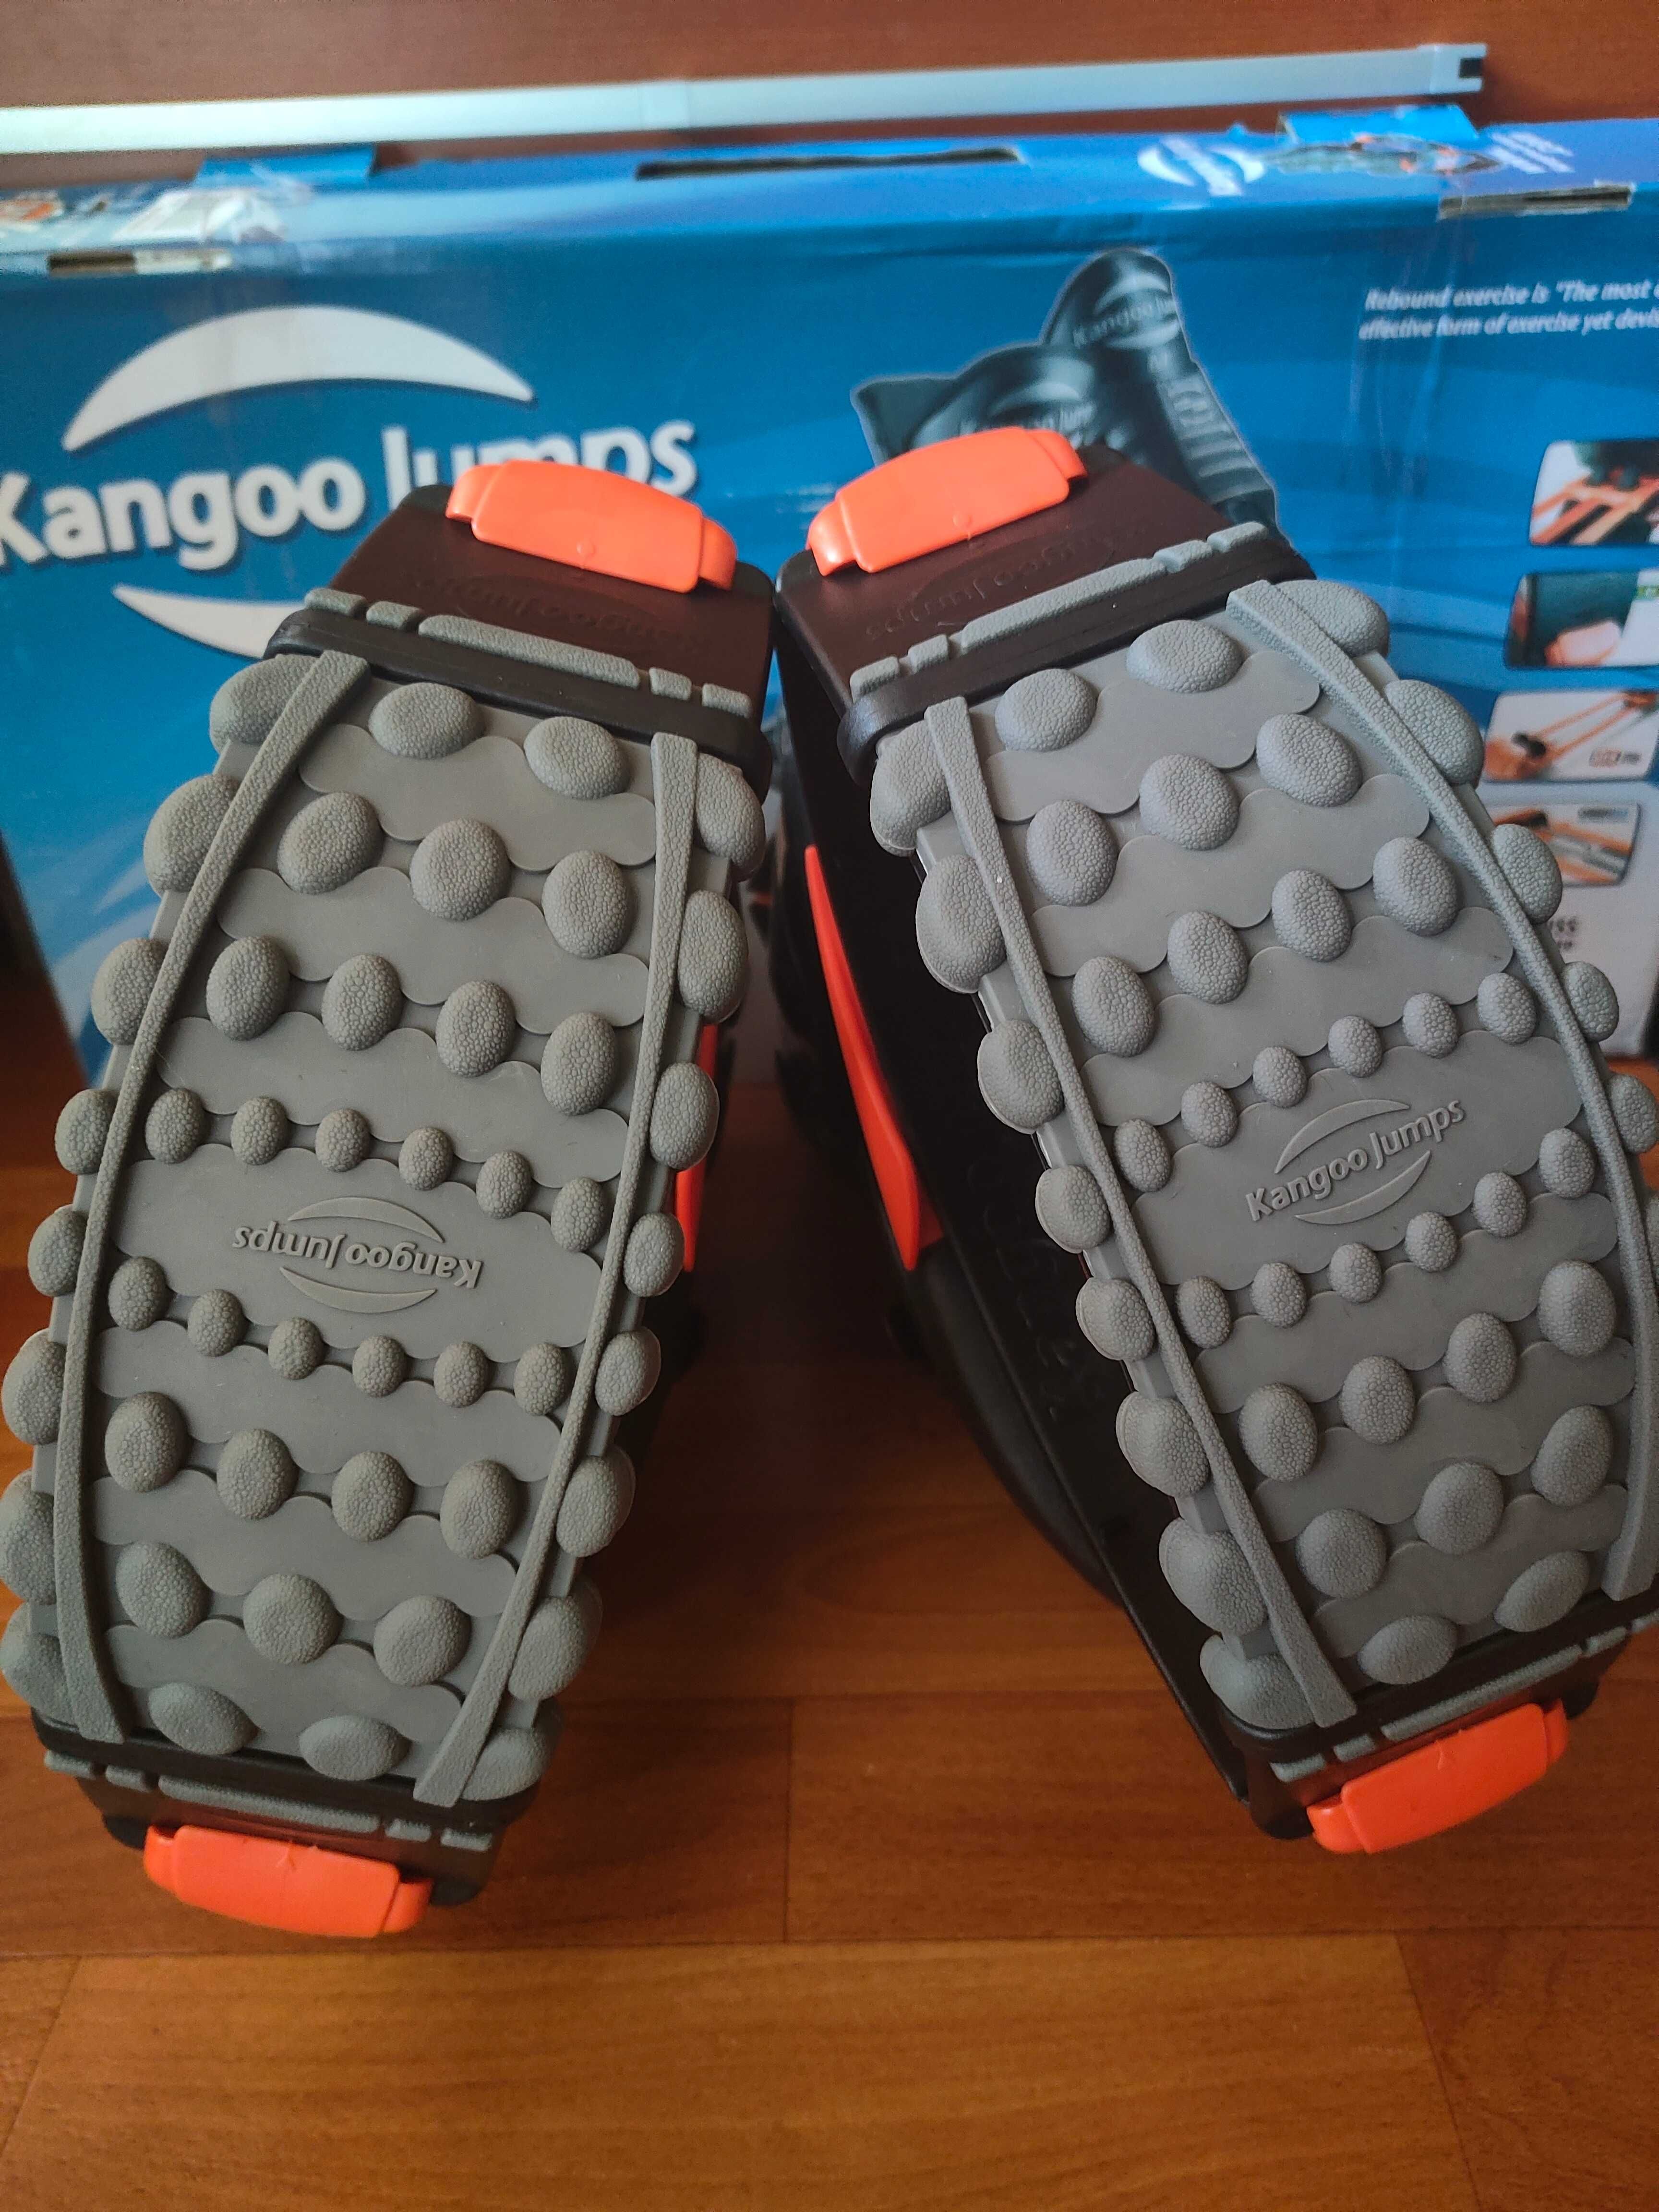 Ботинки Kangoo Jumps M (39-41) Нові!